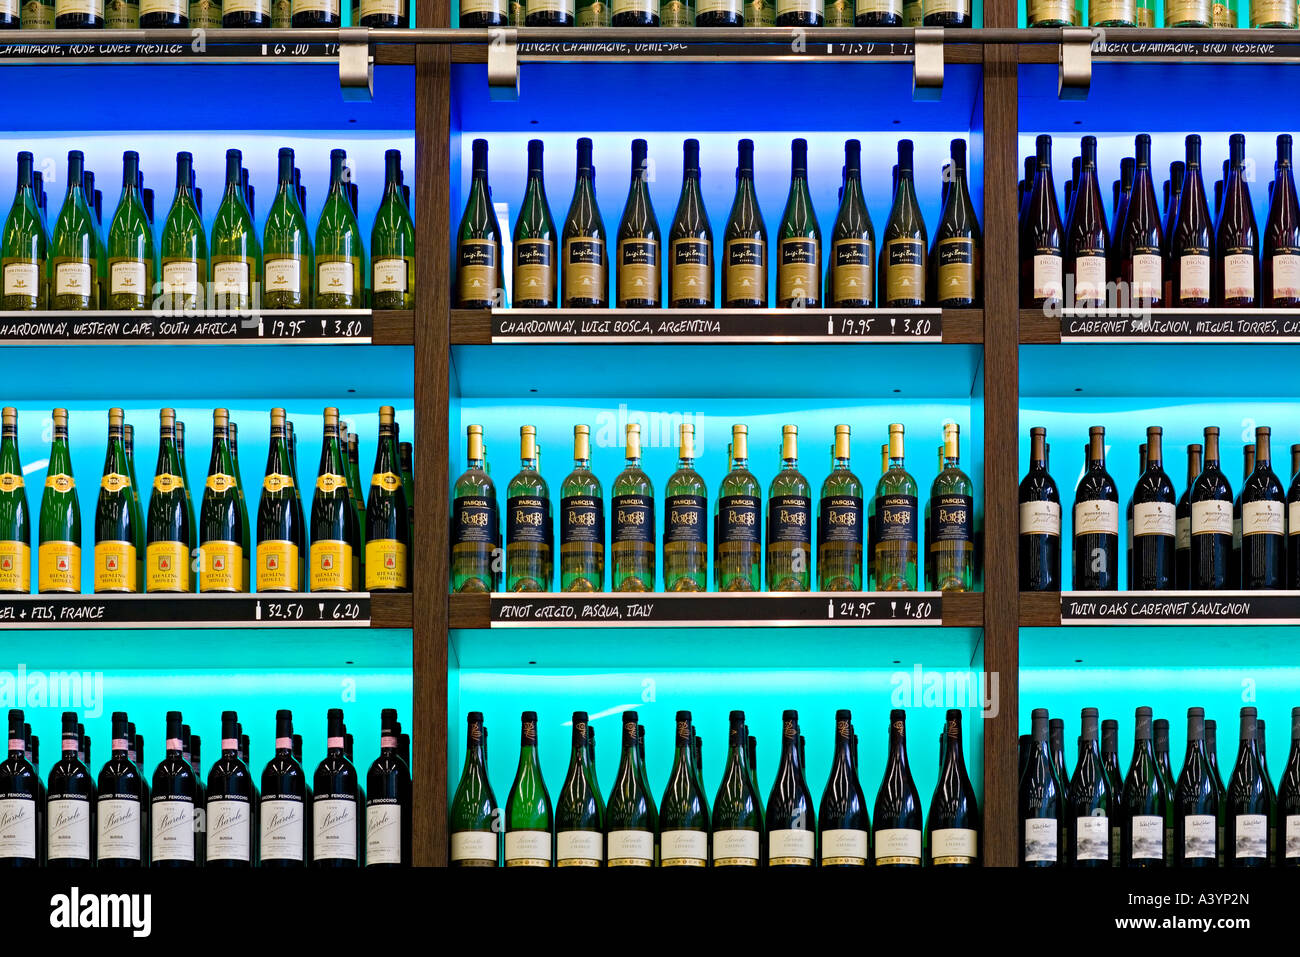 Bubbles Seafood & Weinbar. Flaschen Wein auf dem Display. Amsterdam Schiphol Flughafen. Stockfoto